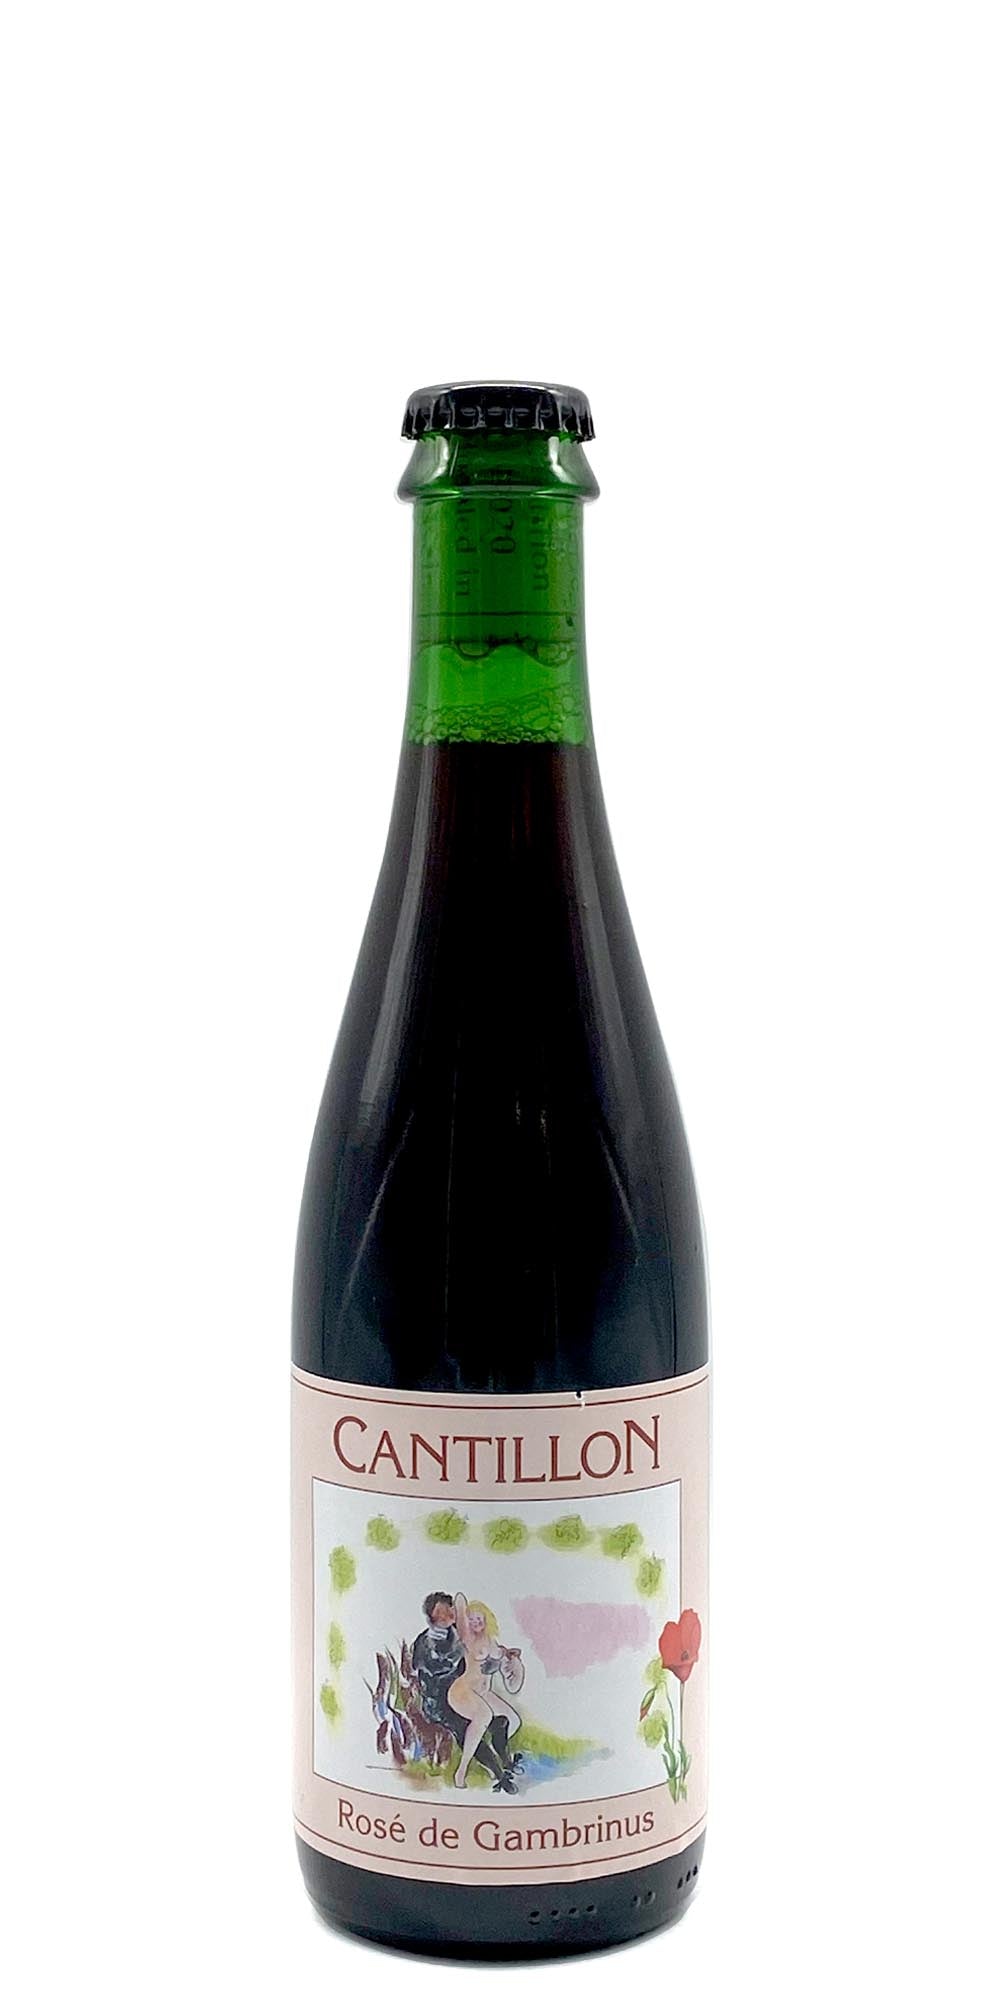 Cantillon - Rose de Gambrinus (2019) (subscriber only)